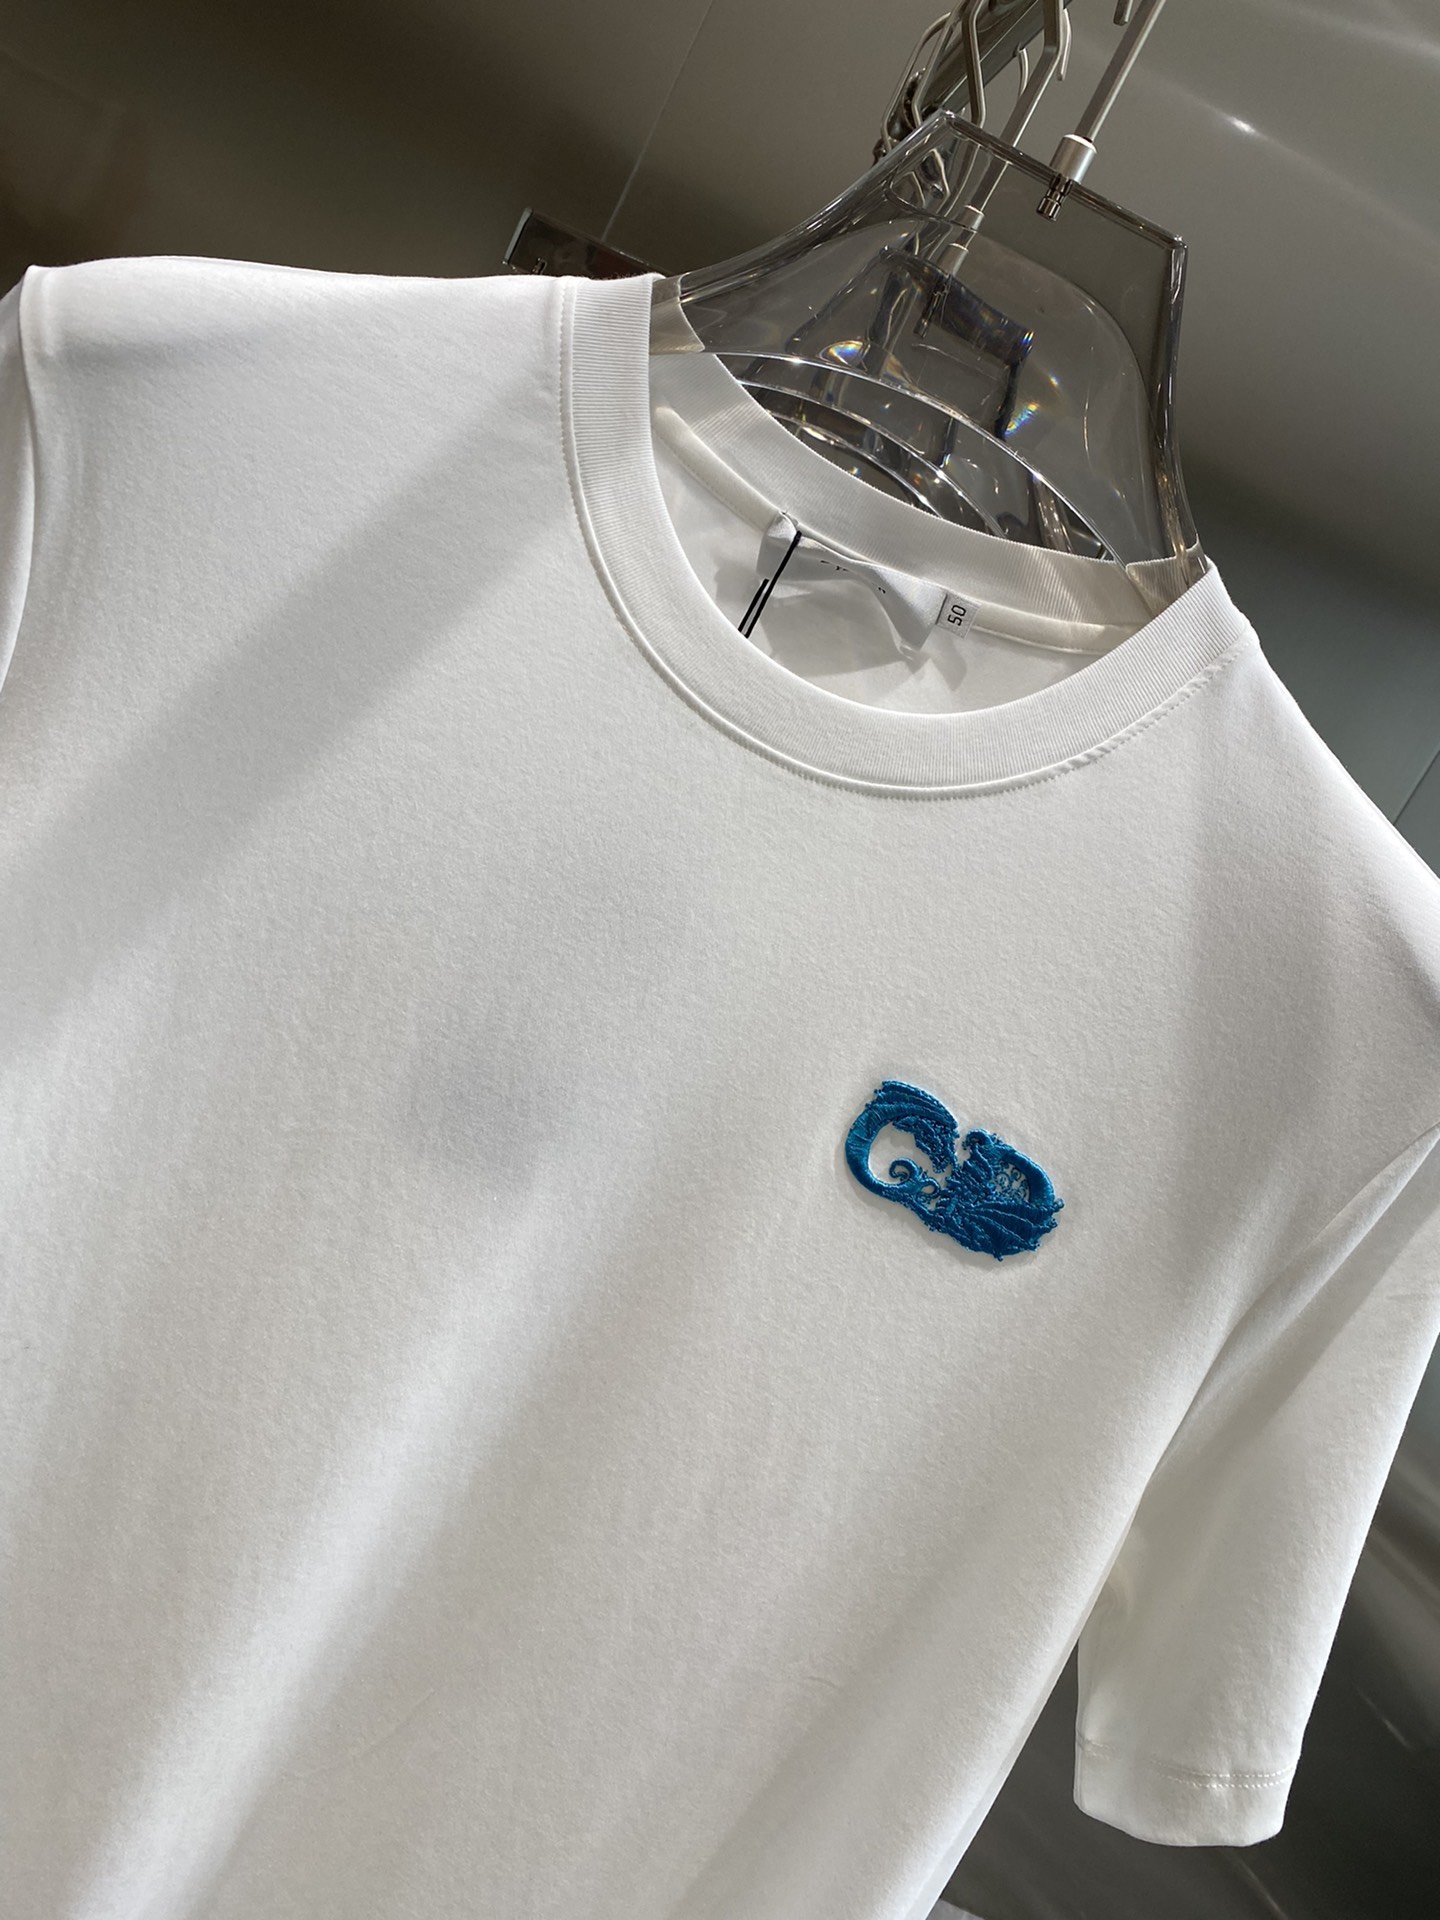 迪家2024Ss最新款短袖T恤原标定制面料手感柔软穿着舒适做工精细.上身效果无敌帅气码数M-3XL隔天